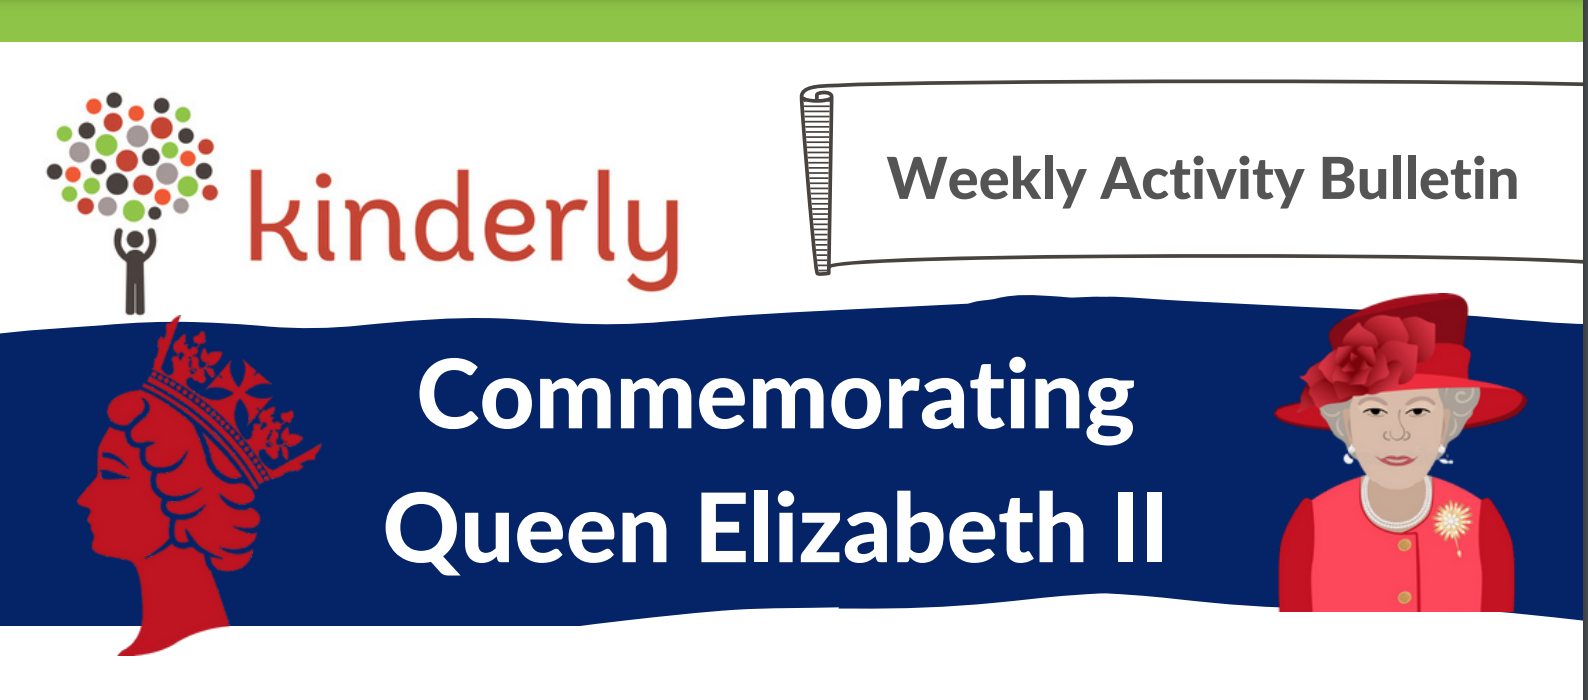 Queen's funeral activities for children